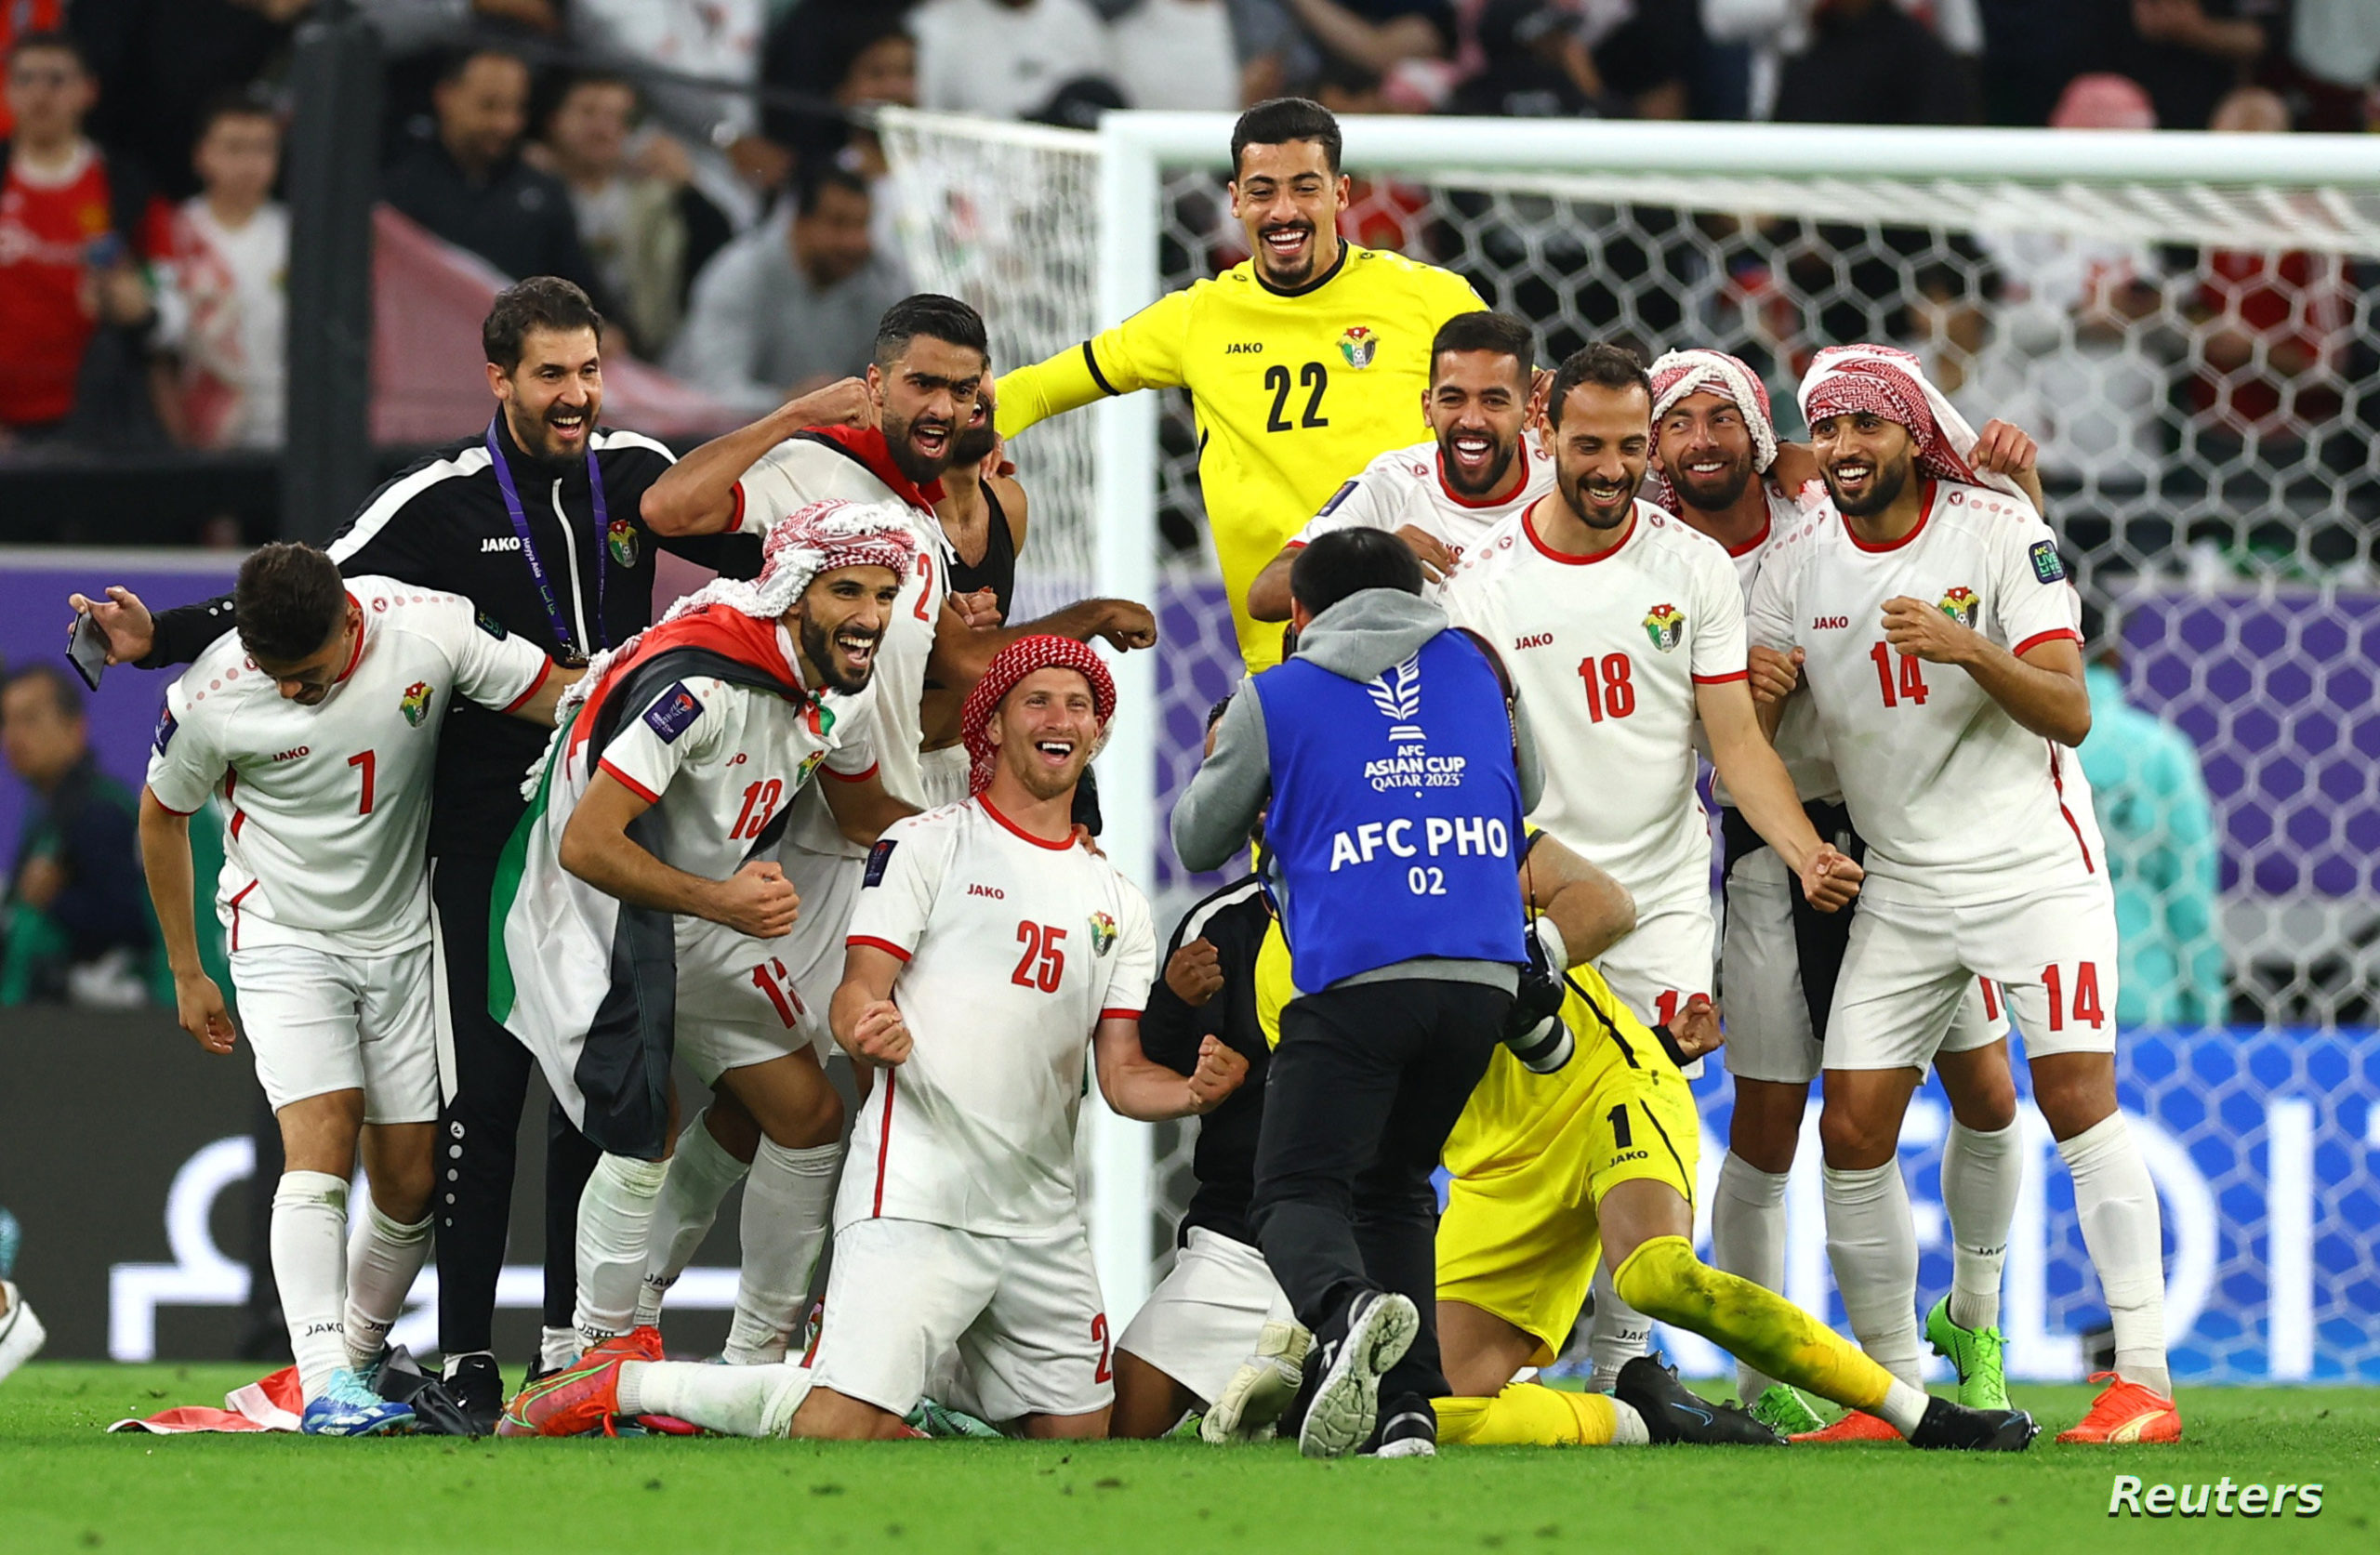 كأس آسيا.. قطر للاحتفاظ باللقب والأردن لدخول التاريخ رفقة عموتة